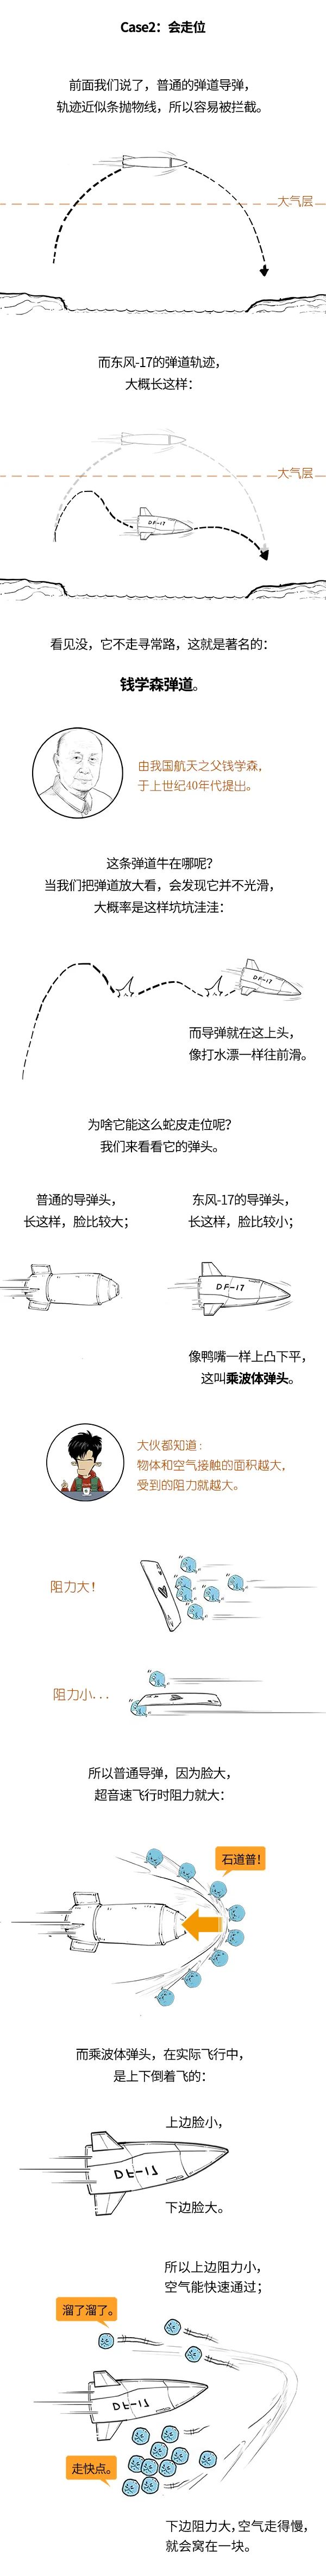 东风-17导弹有多牛？能摧毁航母，还拦不住？：科普中国